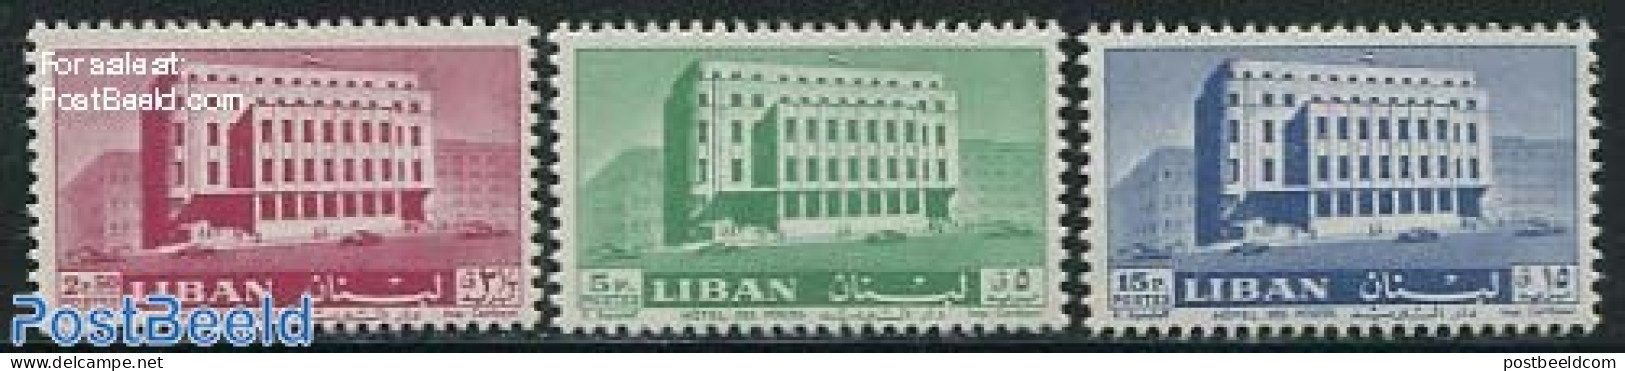 Lebanon 1961 Post Office 3v, Mint NH, Post - Post